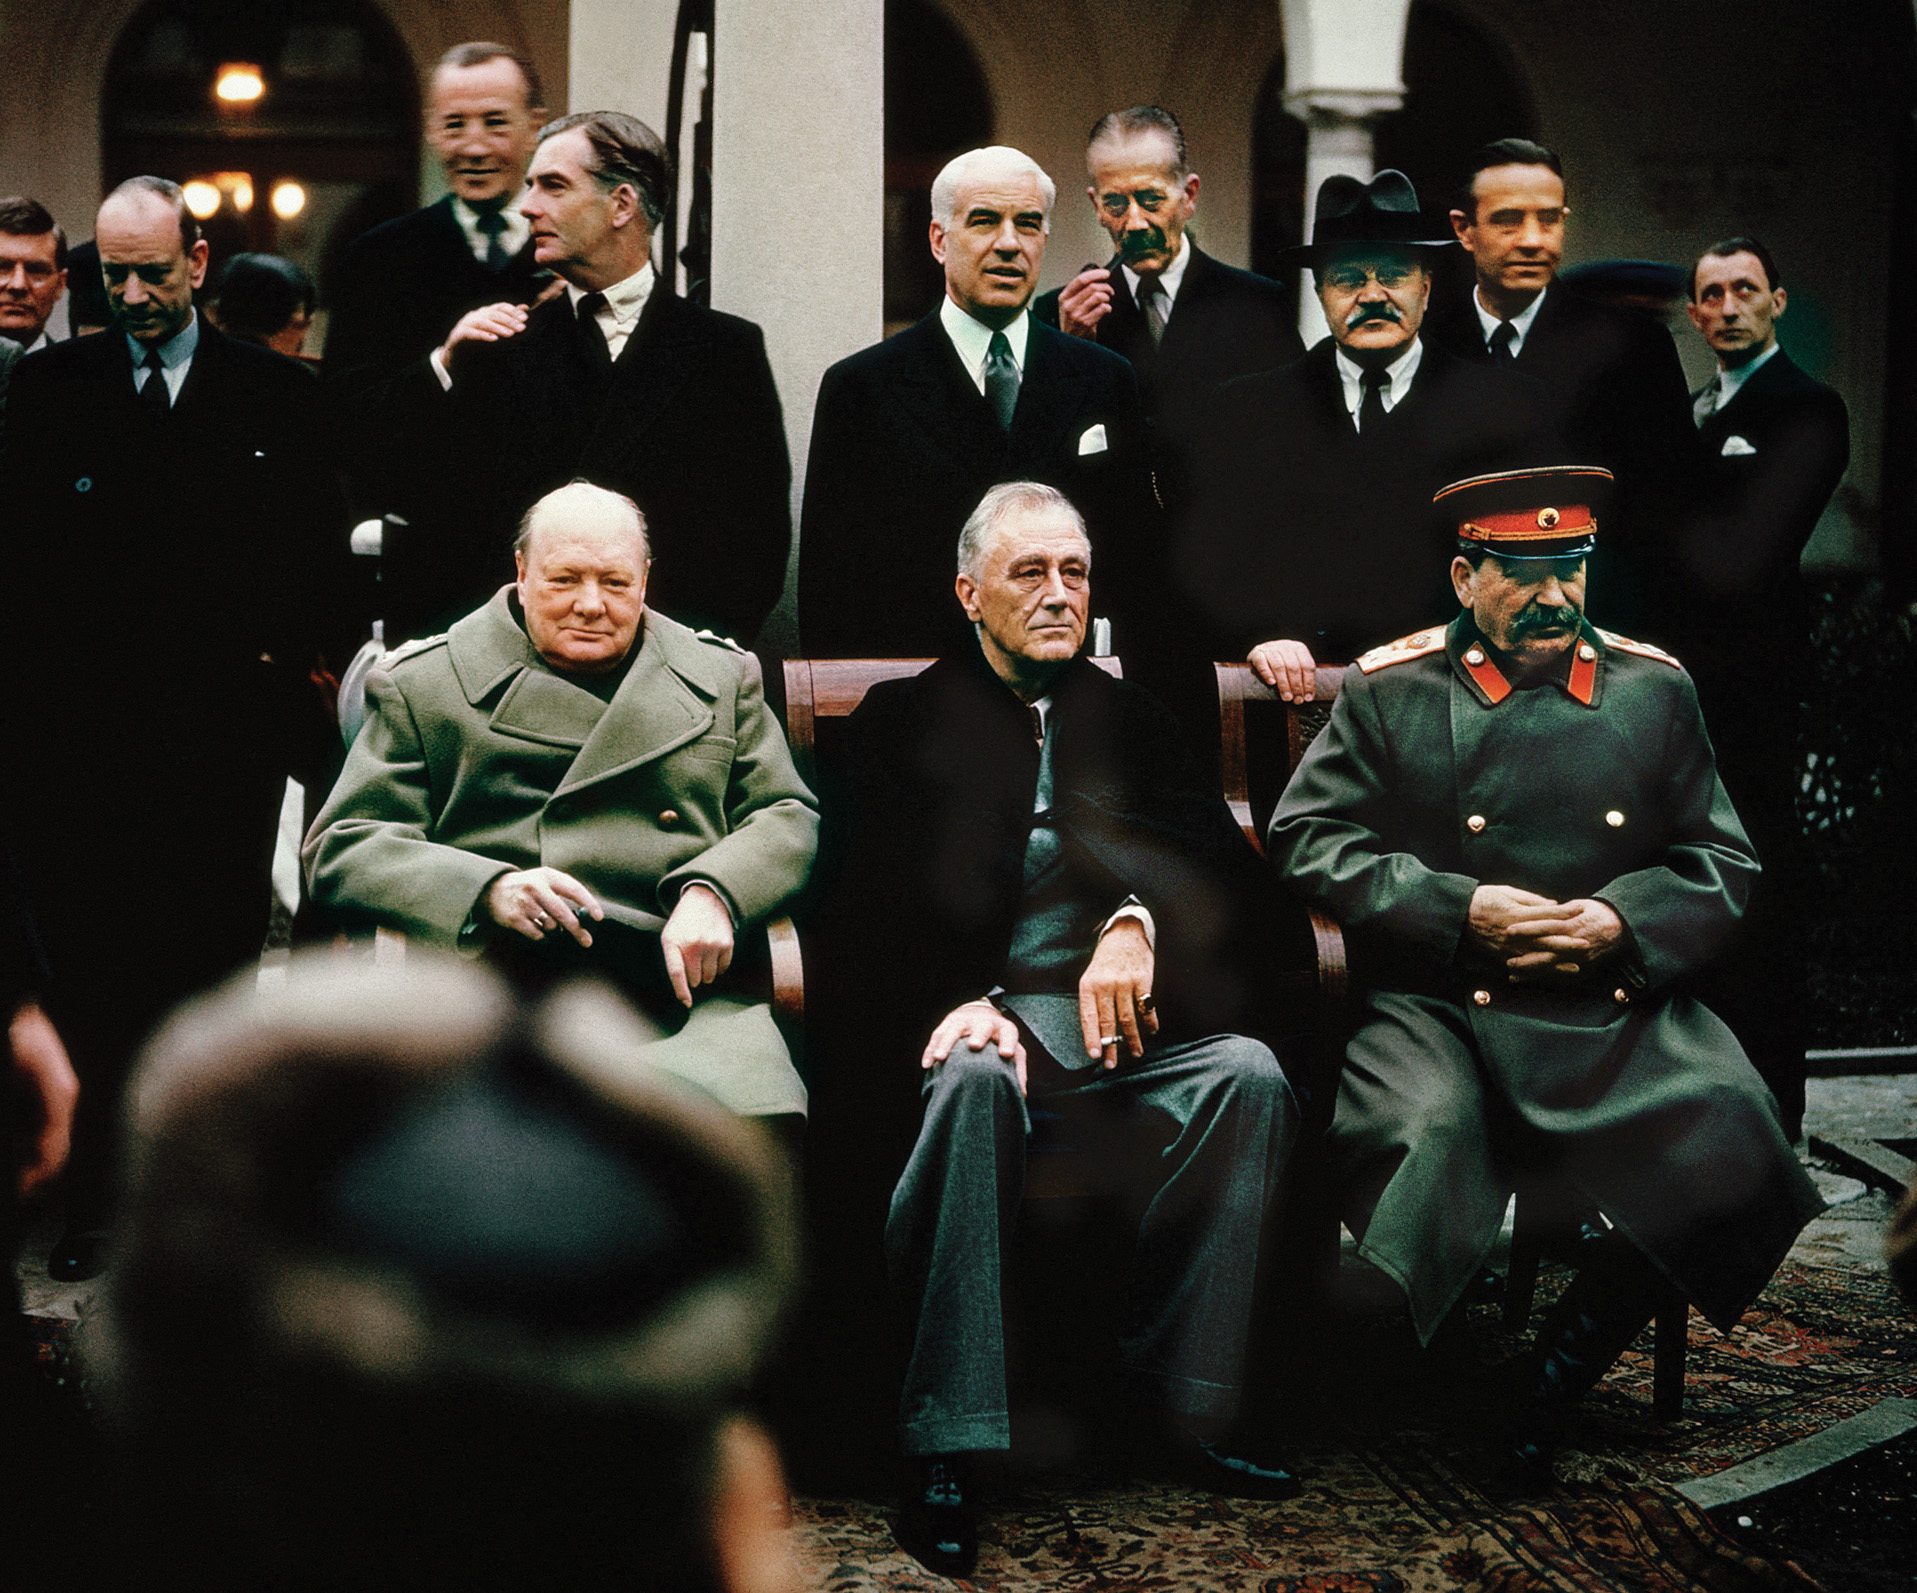 三位领导人的顾问在雅尔塔会议。丘吉尔和斯大林之间的关系有时暴躁,但领导人设法维持联盟,最终击败了纳粹德国和日本帝国。